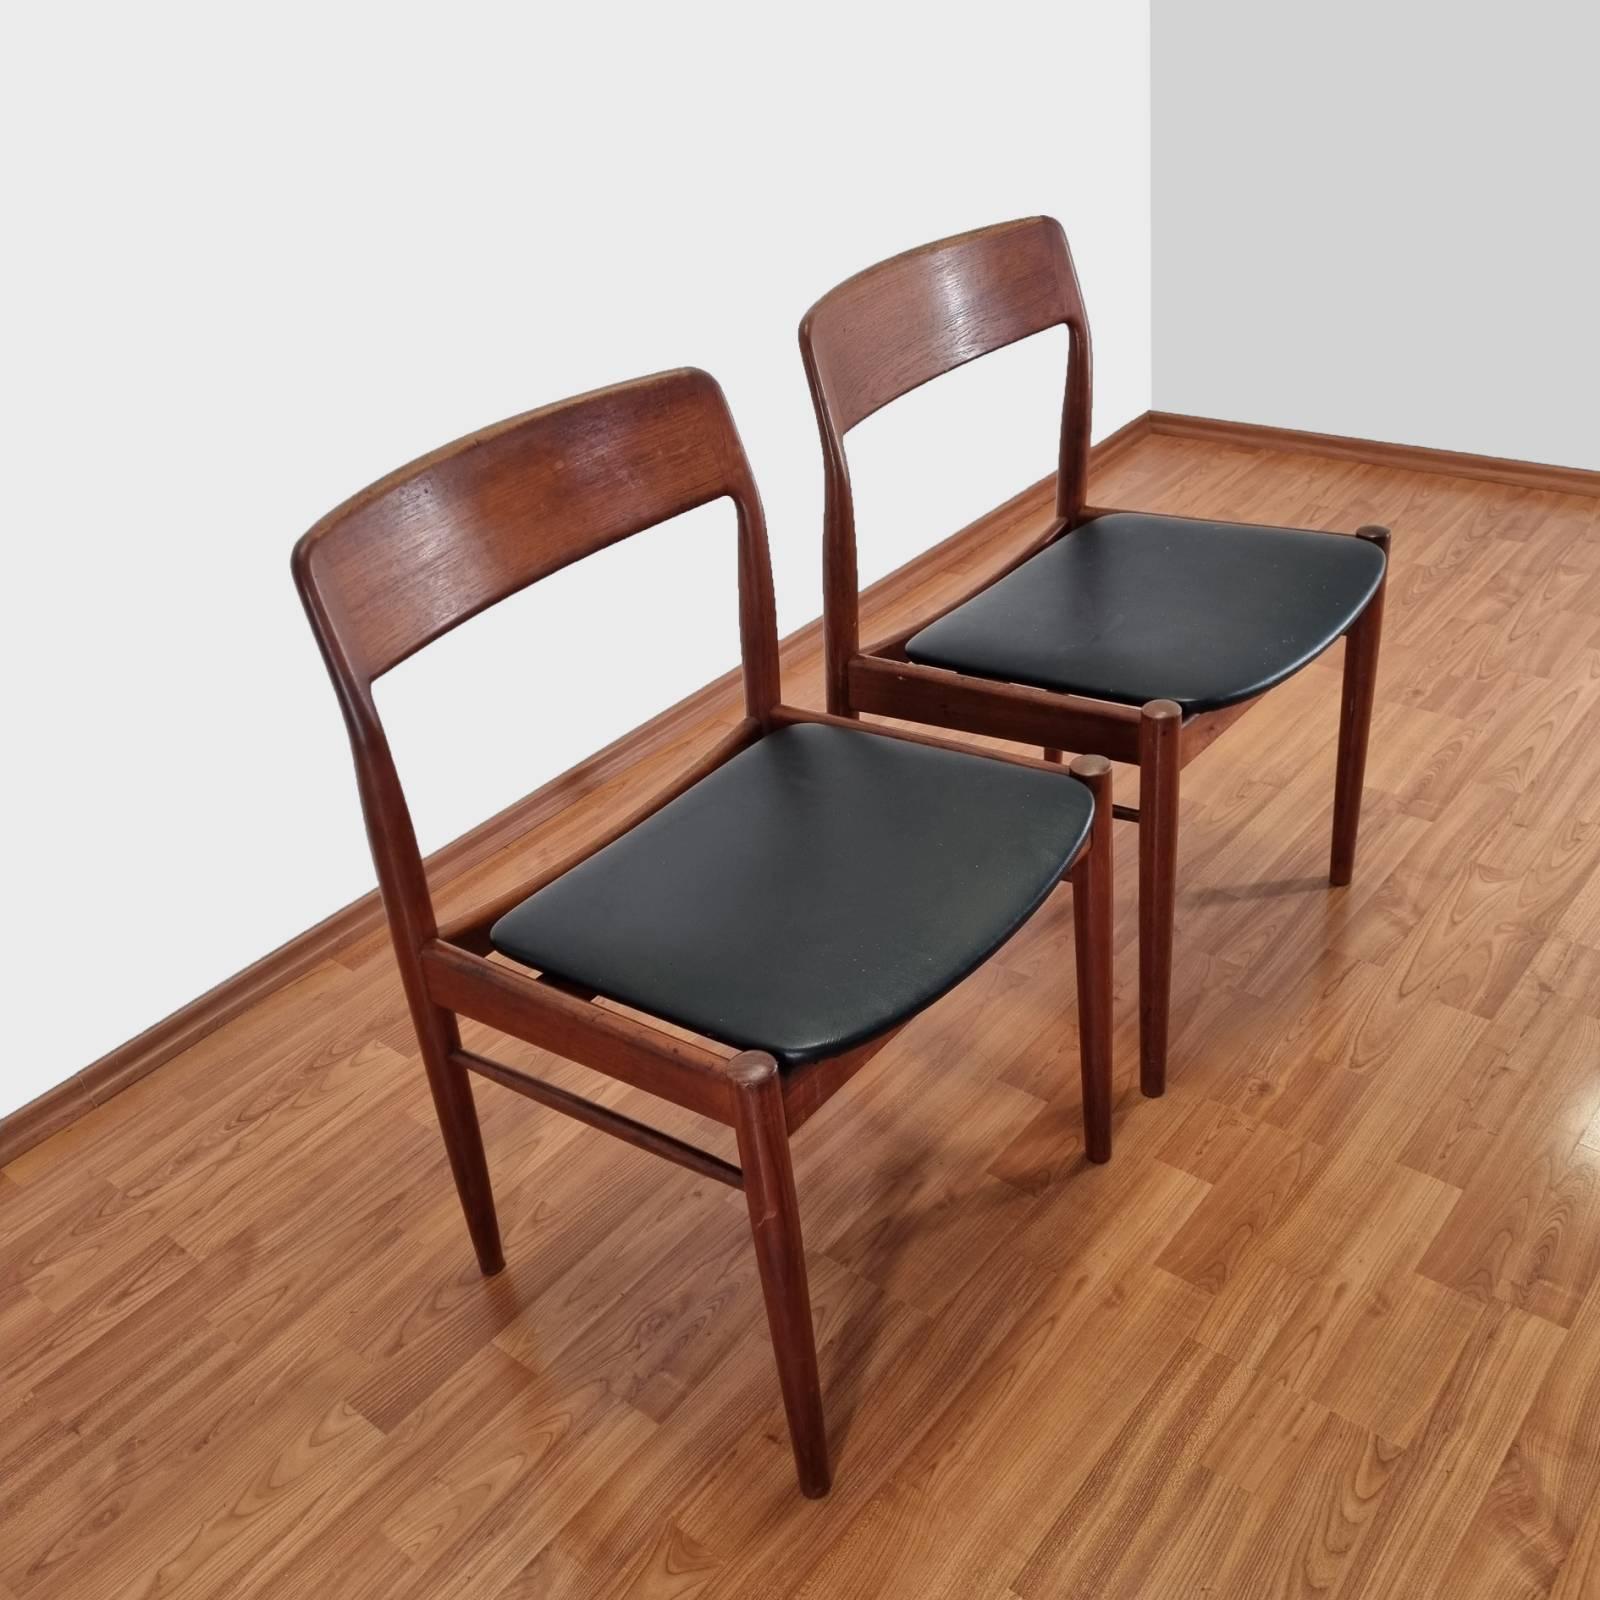 Paire de chaises de salle à manger en teck conçues par Niels Otto Möller, fabriquées au Danemark dans les années 60.
En très bon état vintage avec des traces mineures d'utilisation et d'âge.
